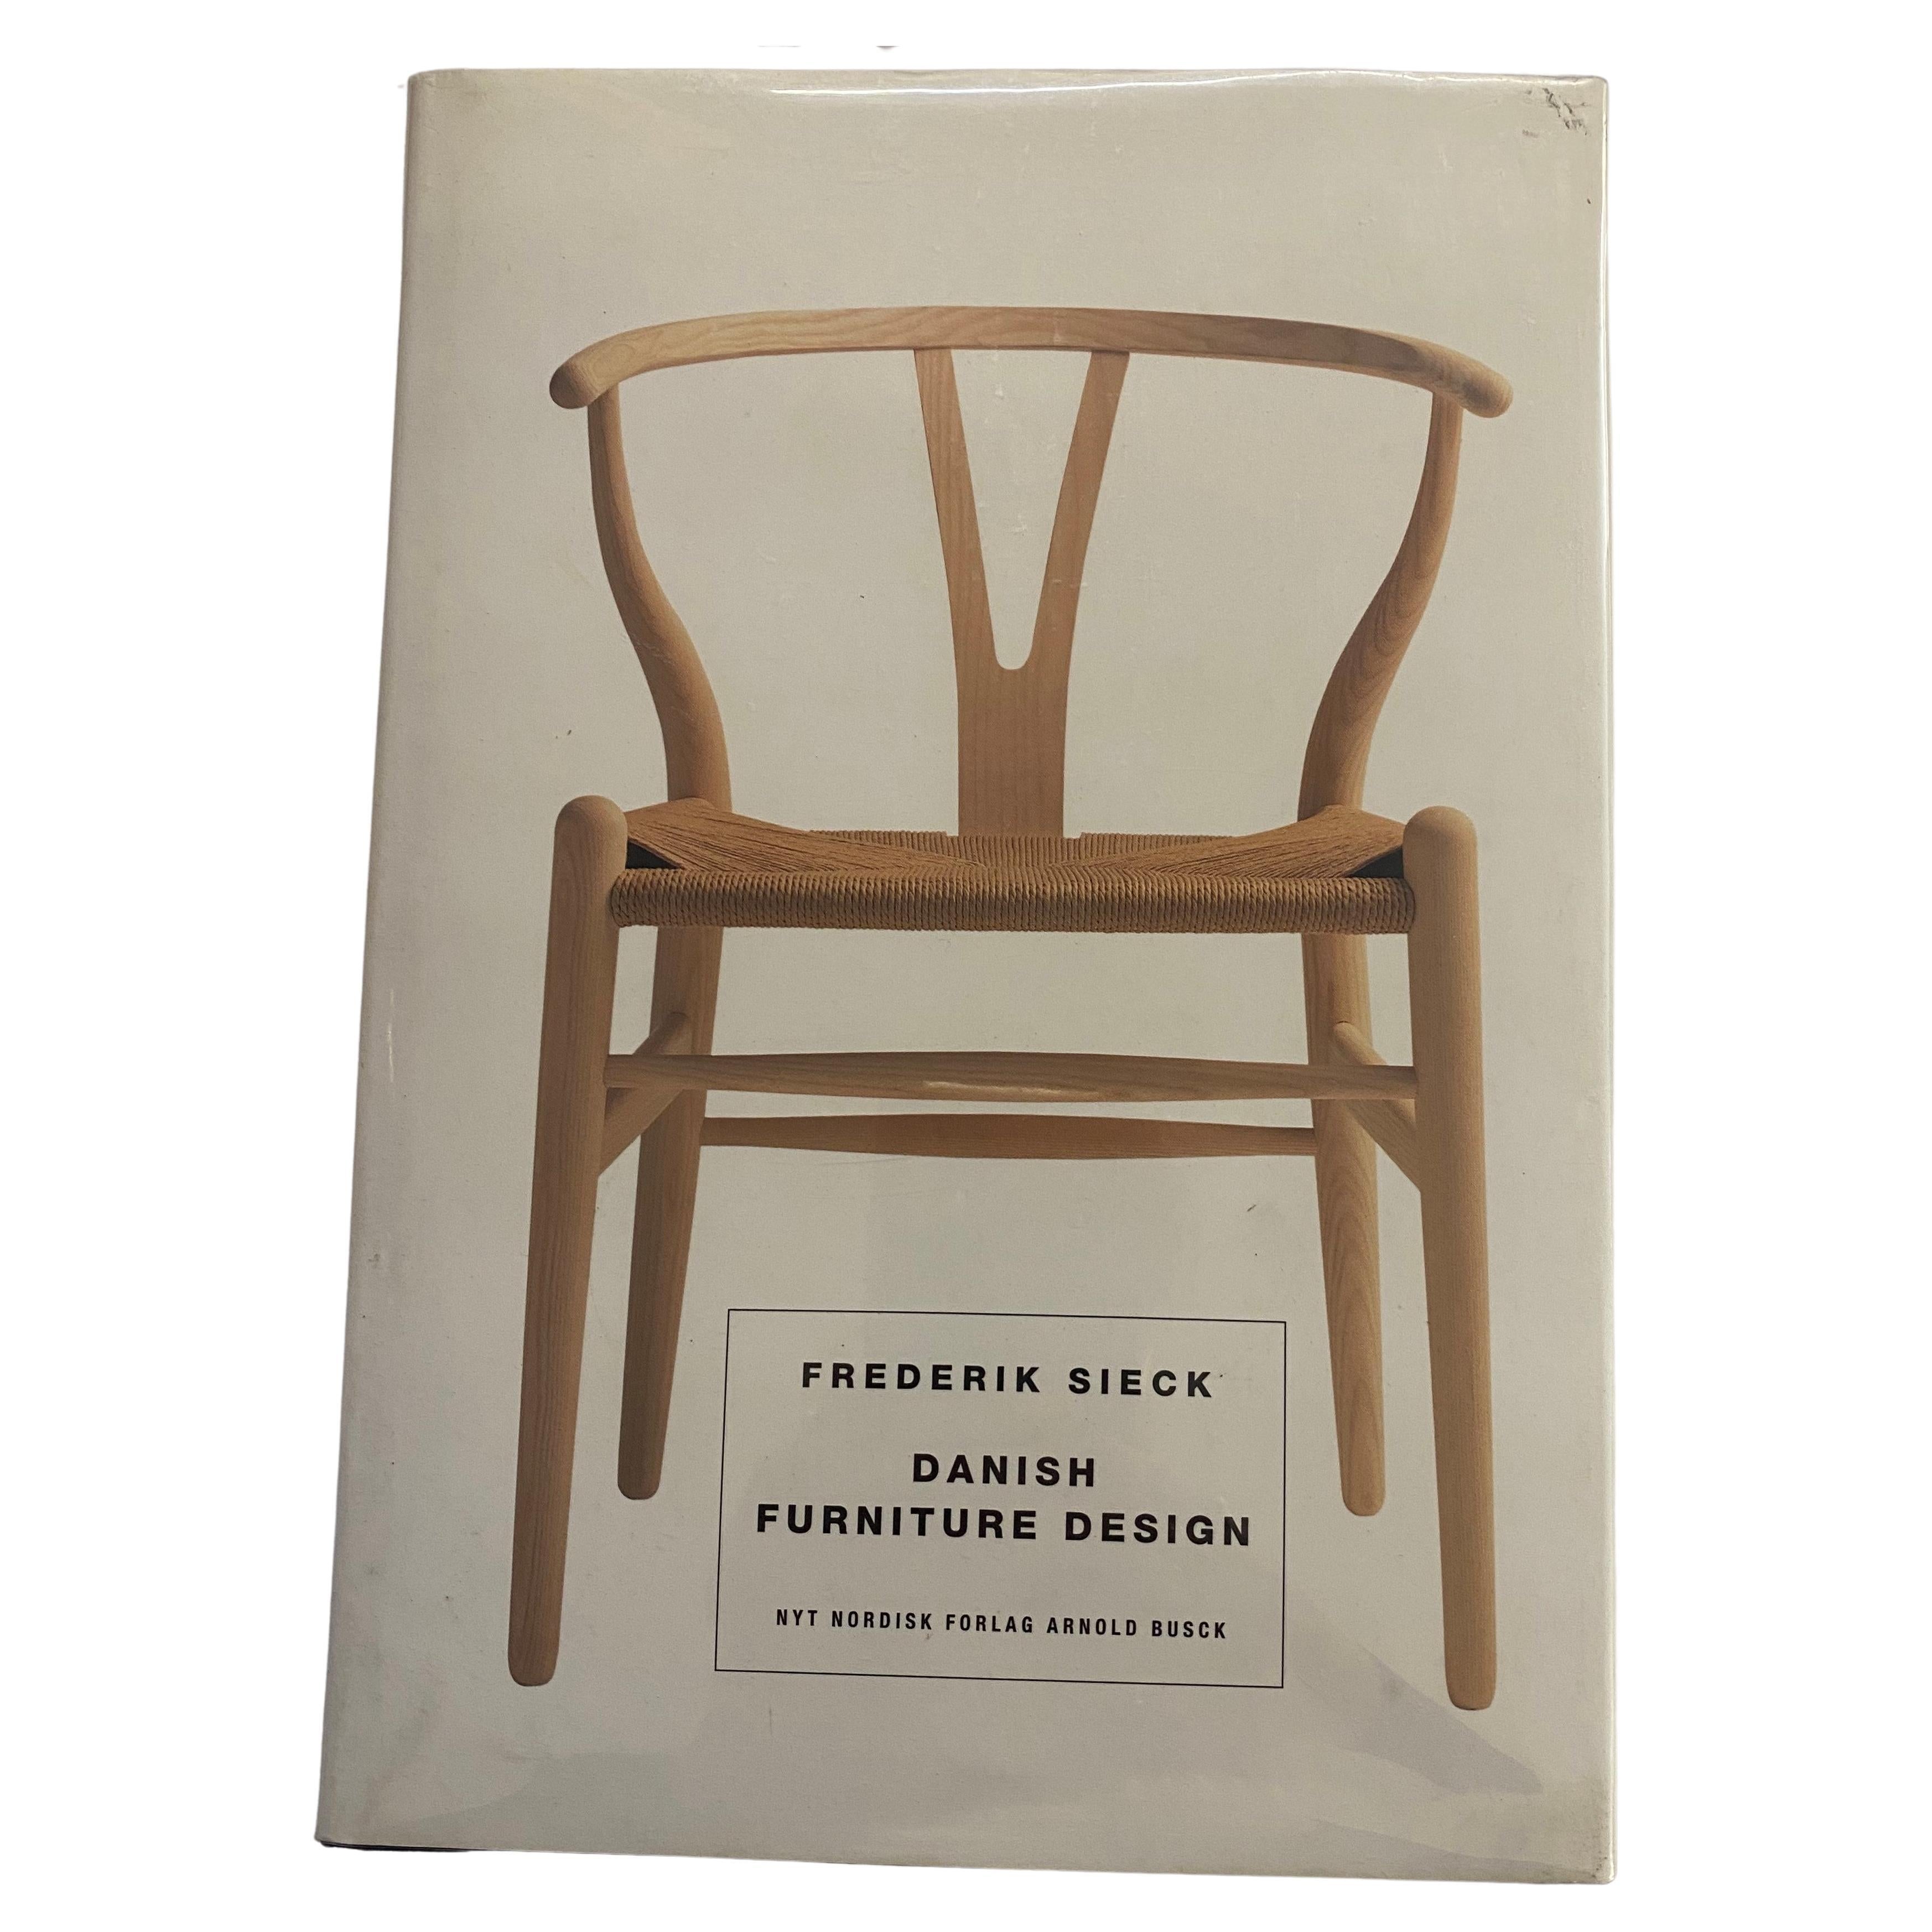 Conception de meubles danois par Frederik Sieck (livre)